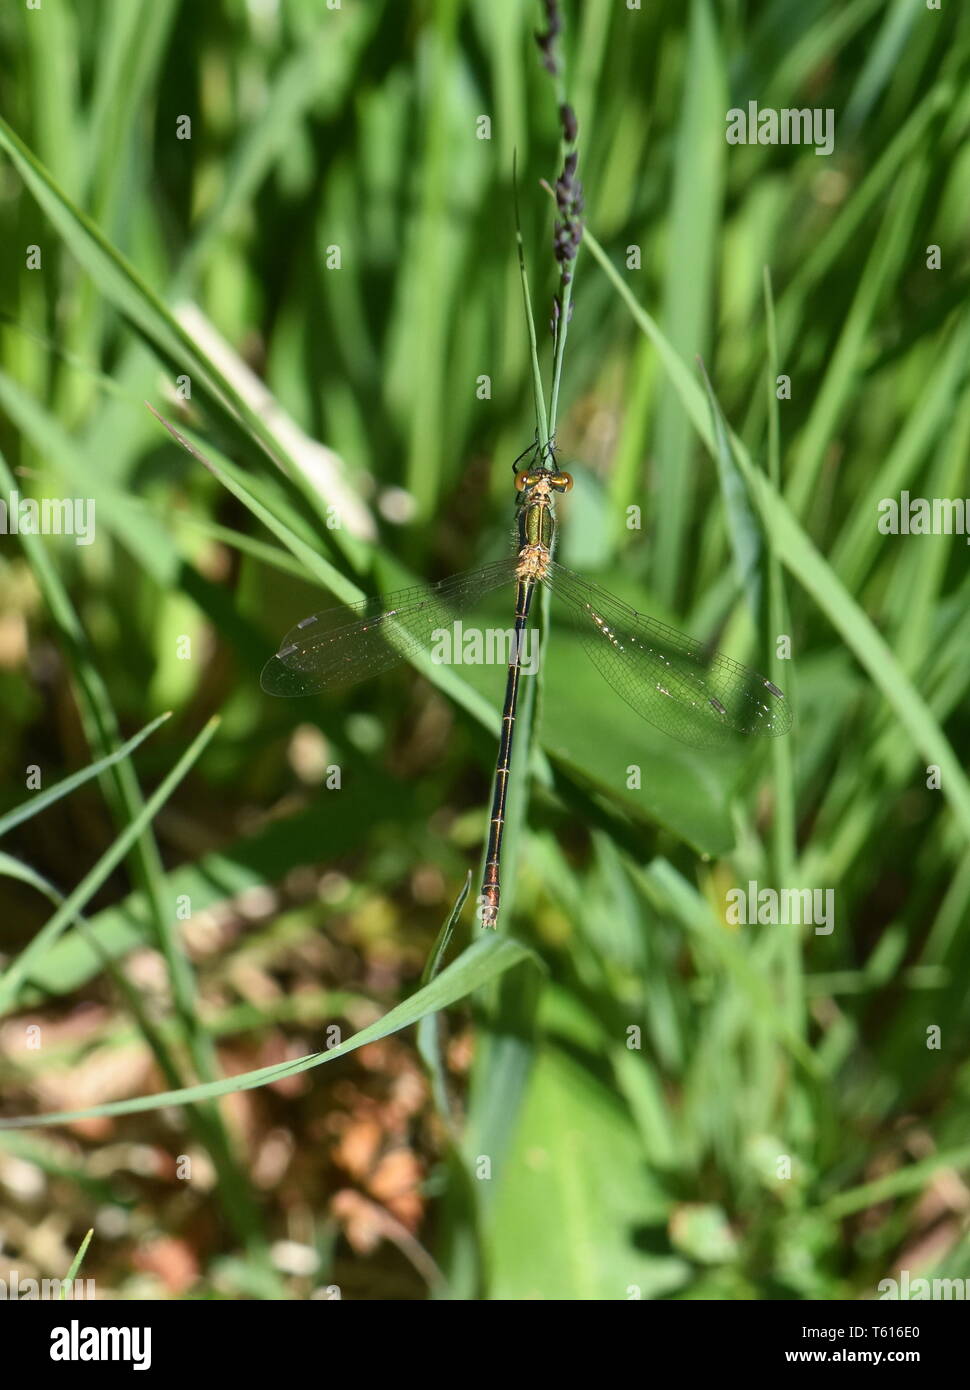 Die Emerald damselfly Lestes sponsa weibliche in der Vegetation sitzen Stockfoto